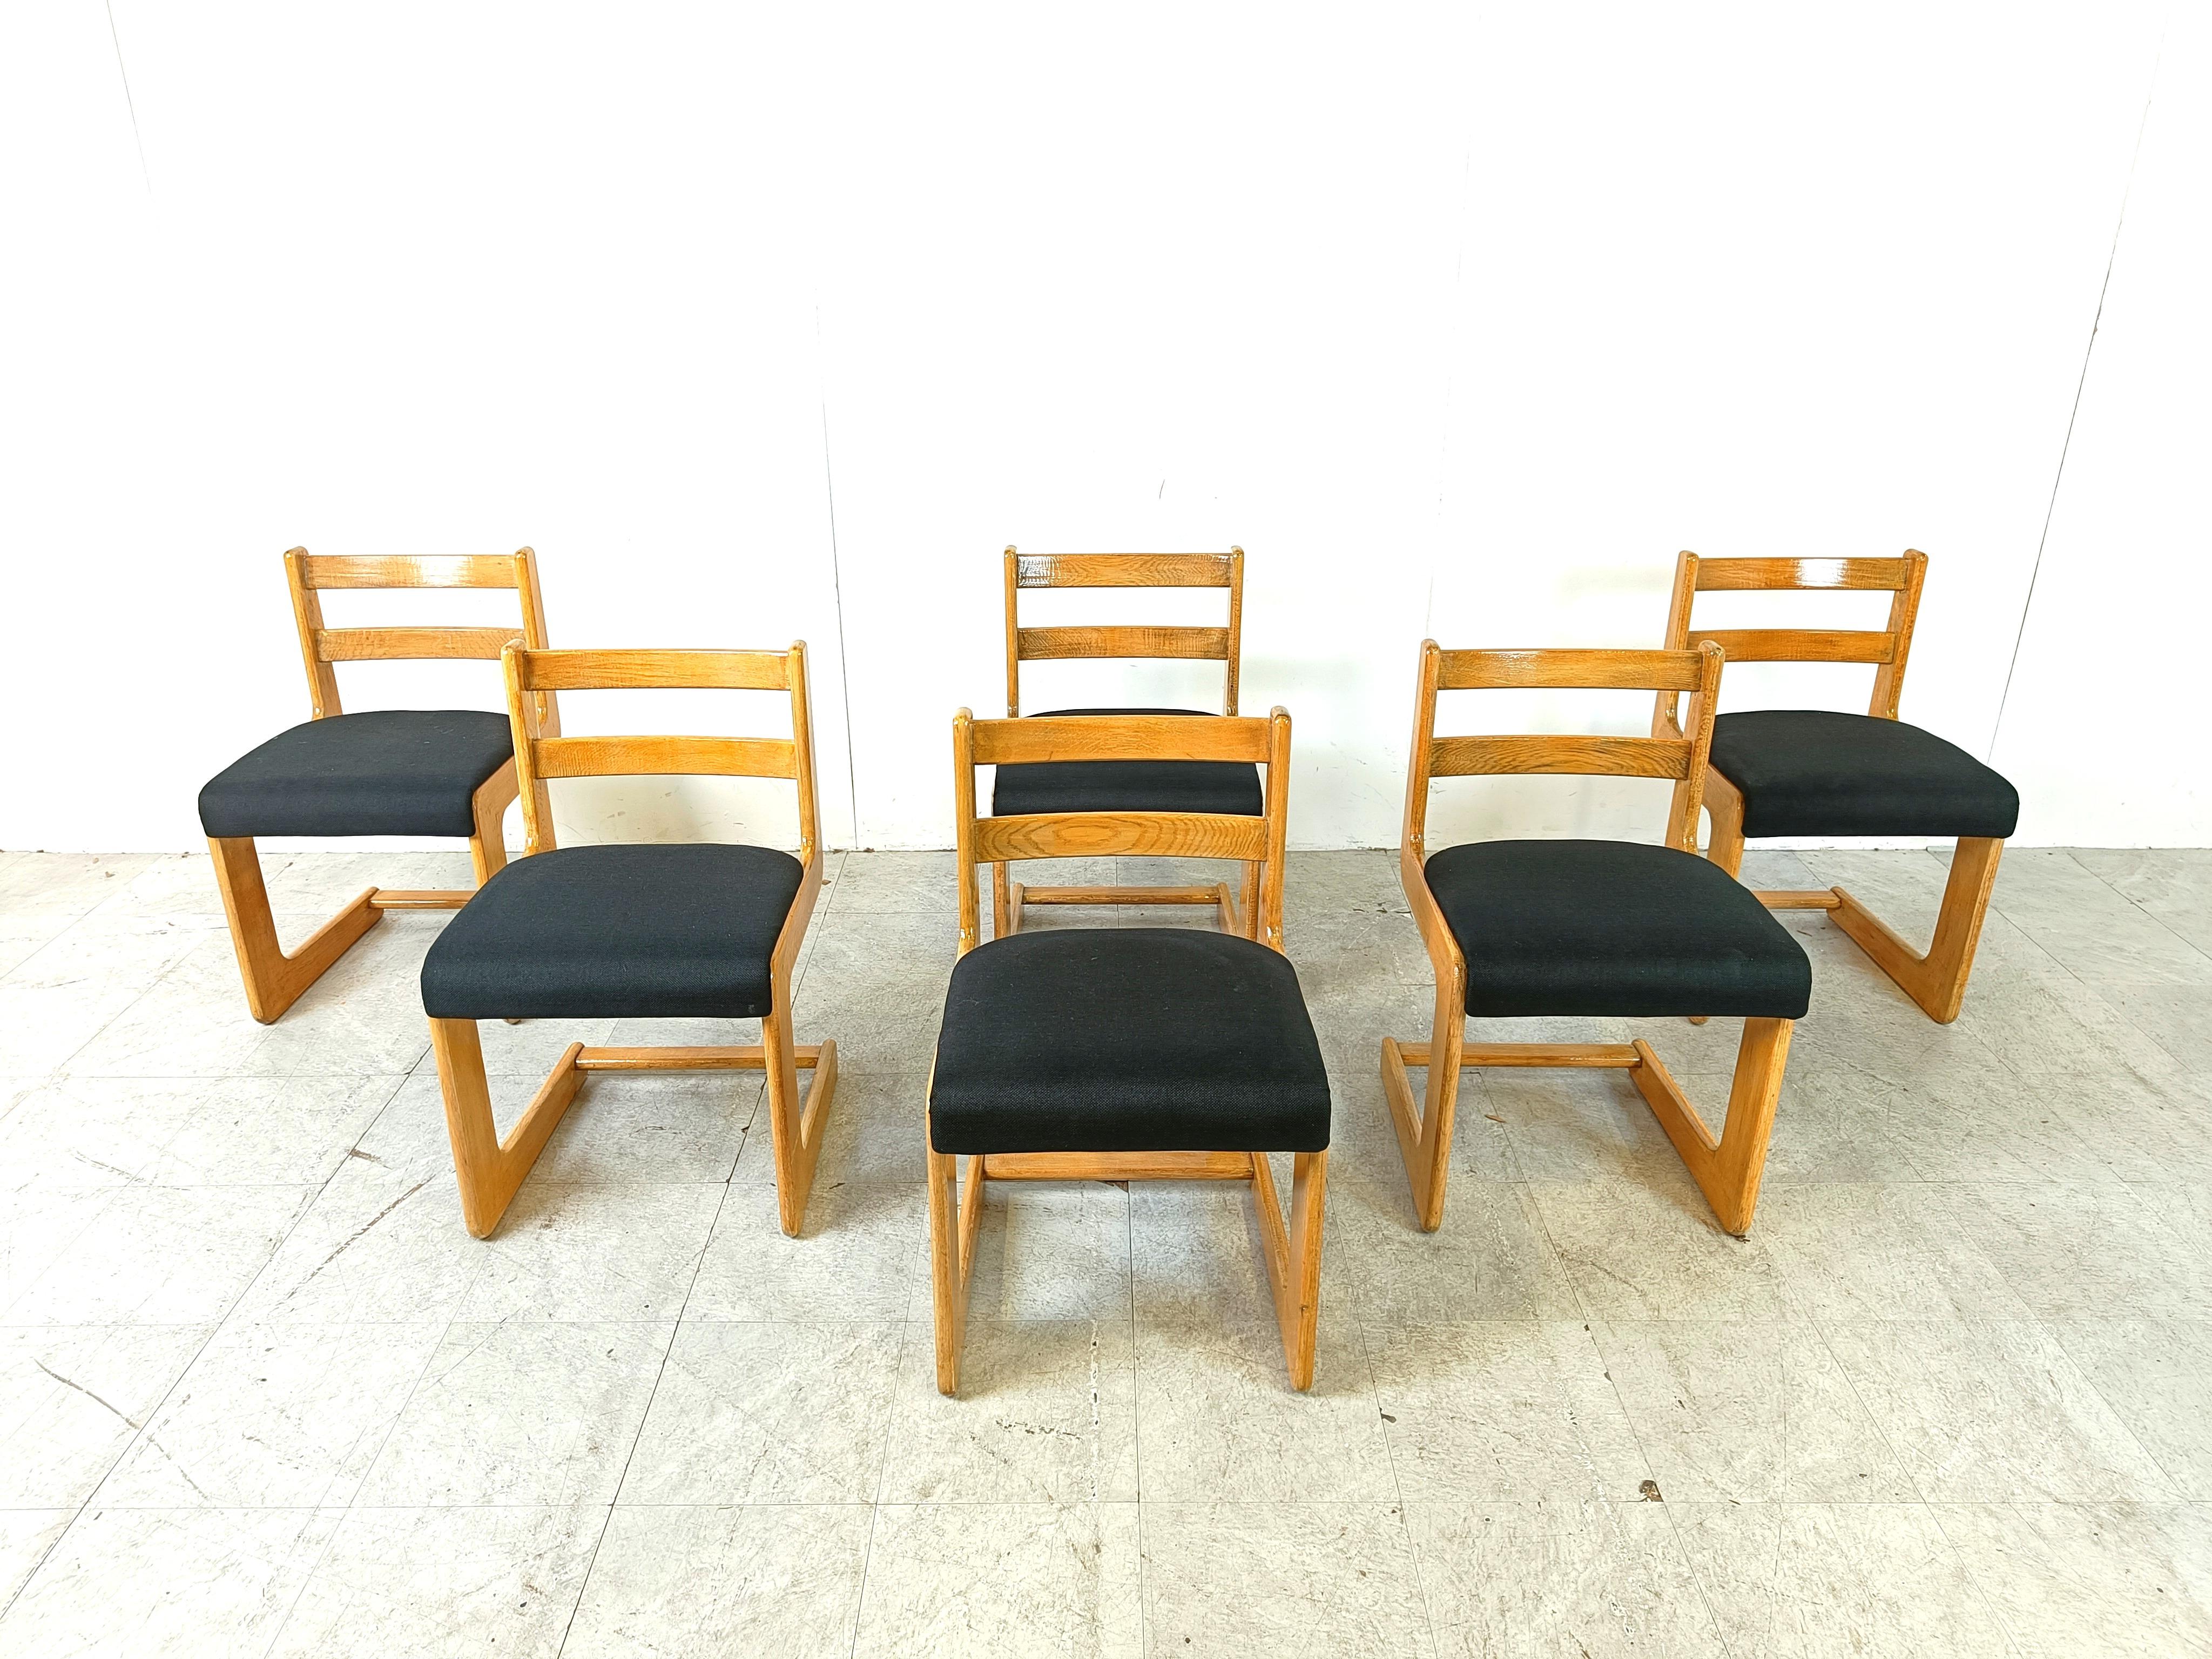 Ensemble de 6 chaises de salle à manger par Casala avec des cadres cantilever en chêne et des sièges en tissu nouvellement rembourrés.

Un beau design intemporel 

Très bon état.

Années 1970 - Allemagne

Dimensions
Hauteur : 78cm/30.70